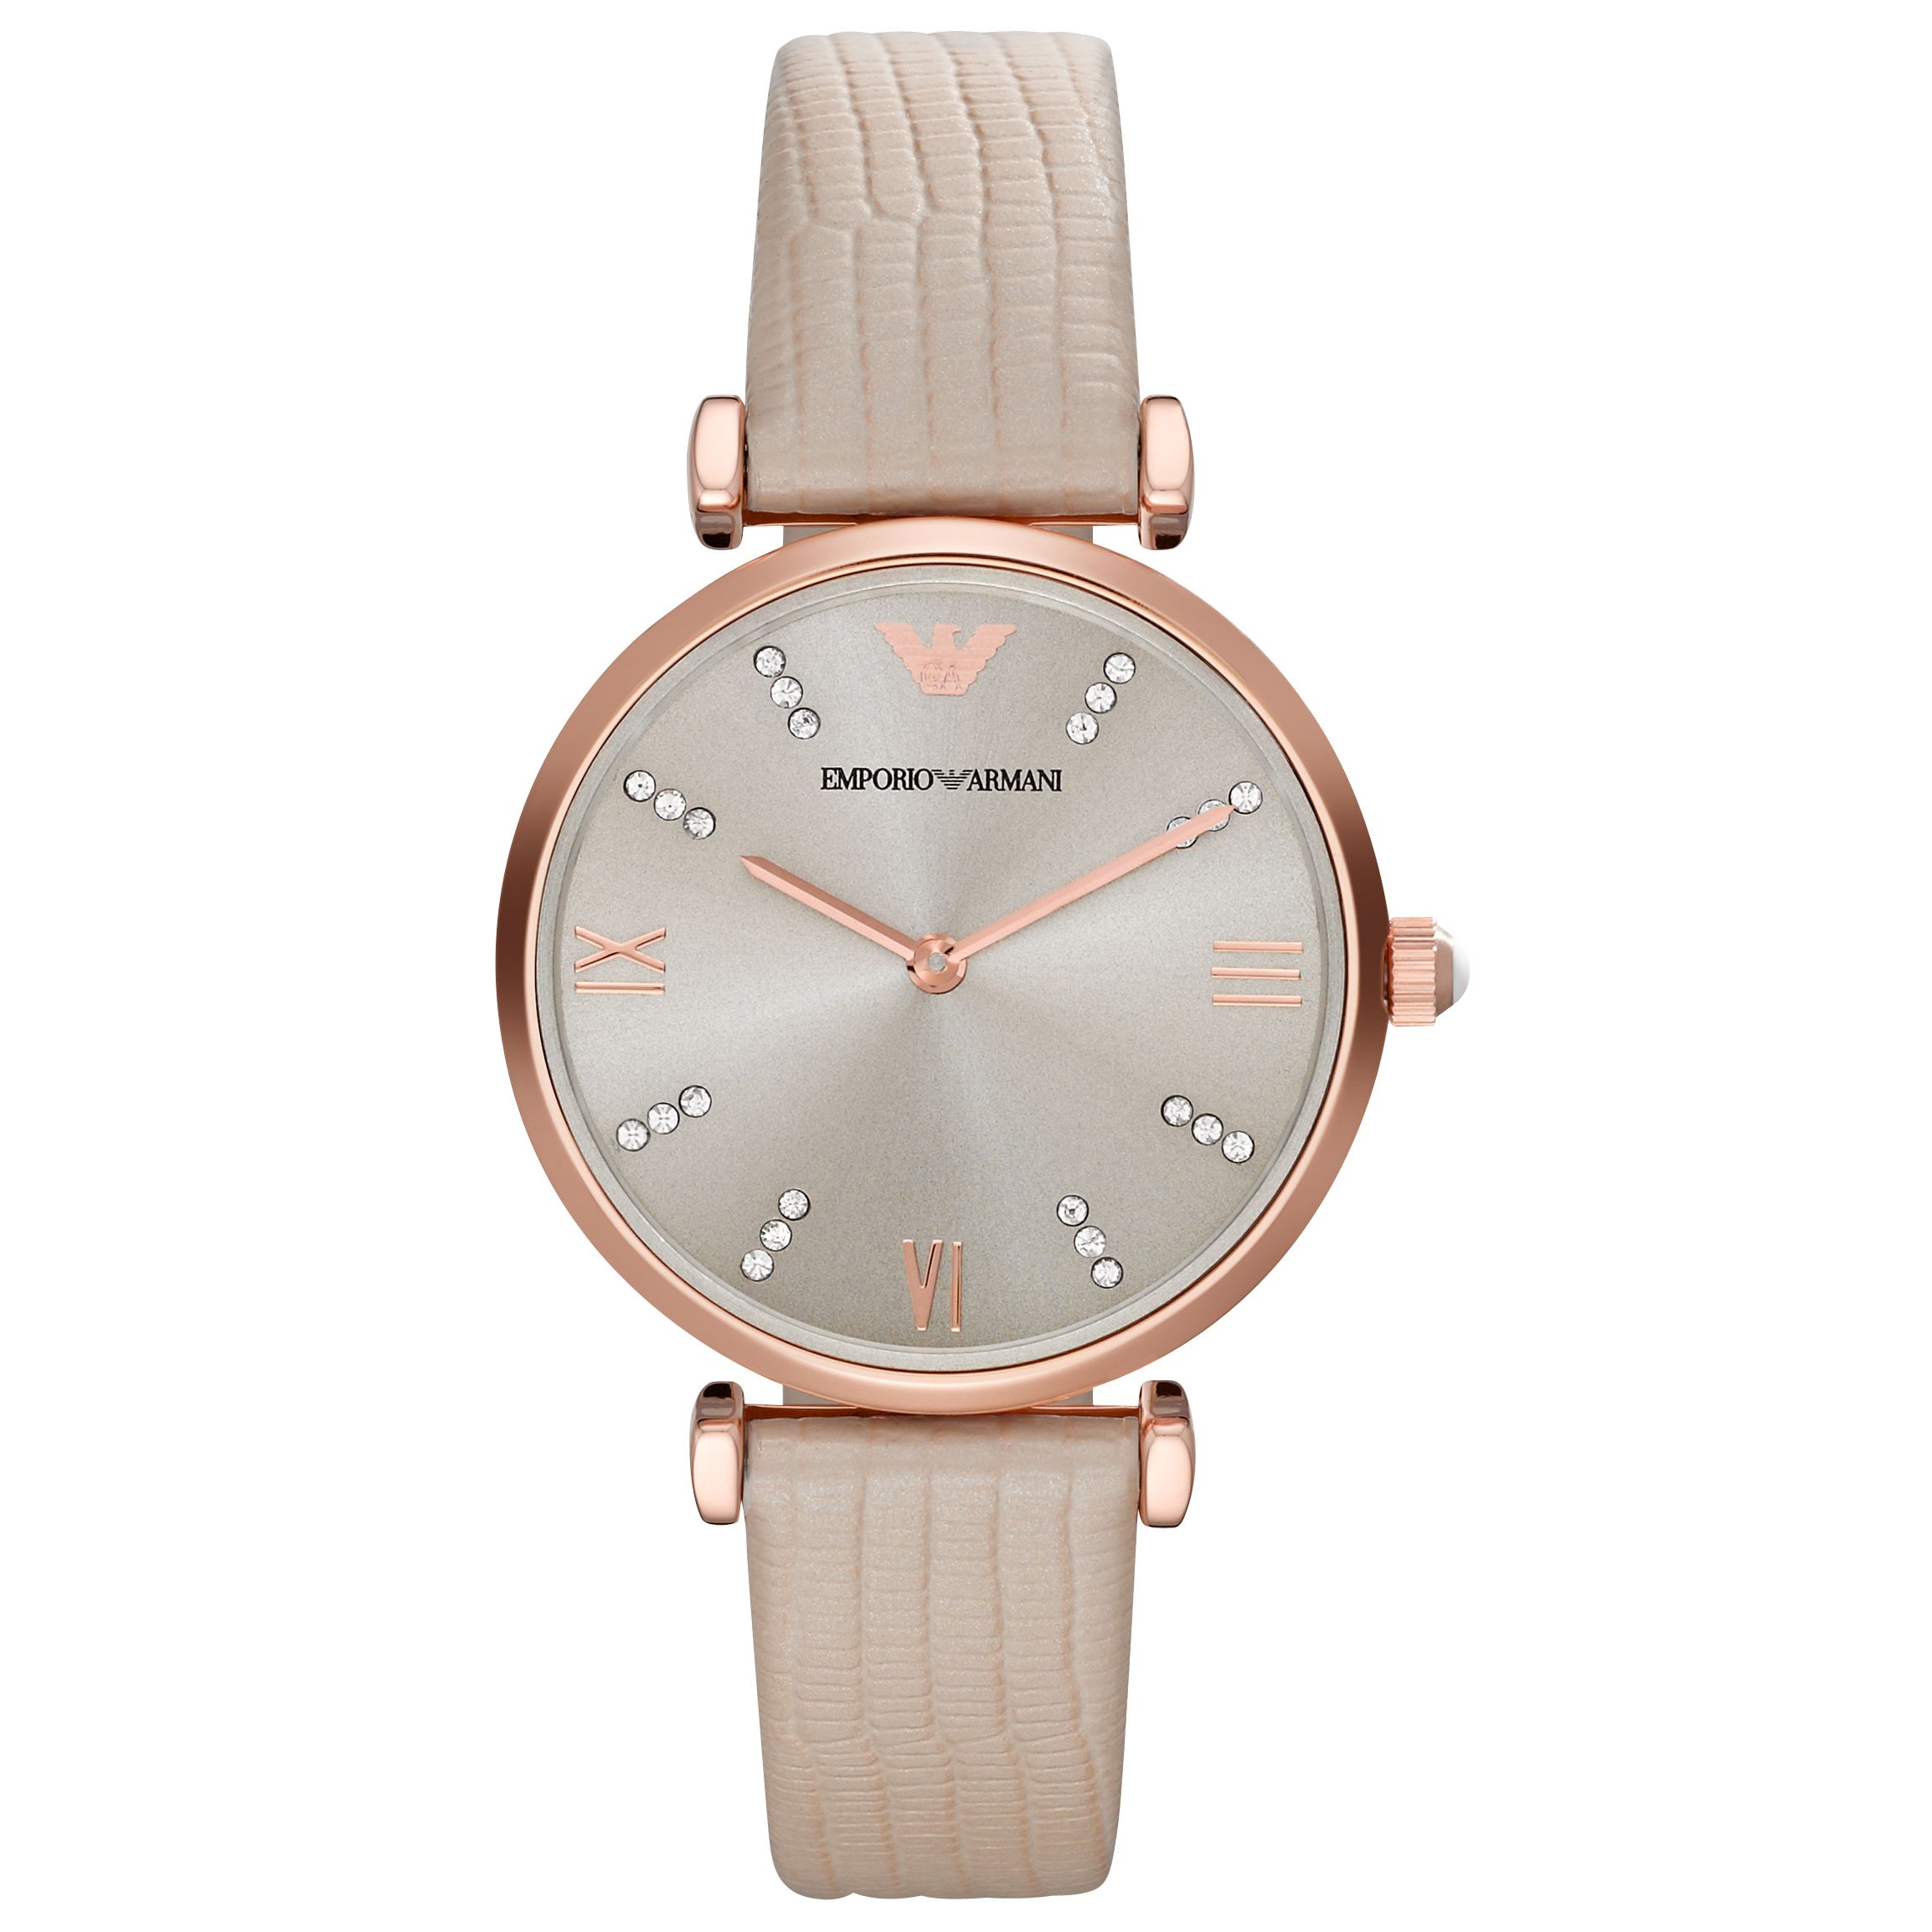 Emporio Armani AR1681 Women's Leather Strap Watch, Cream/Silver